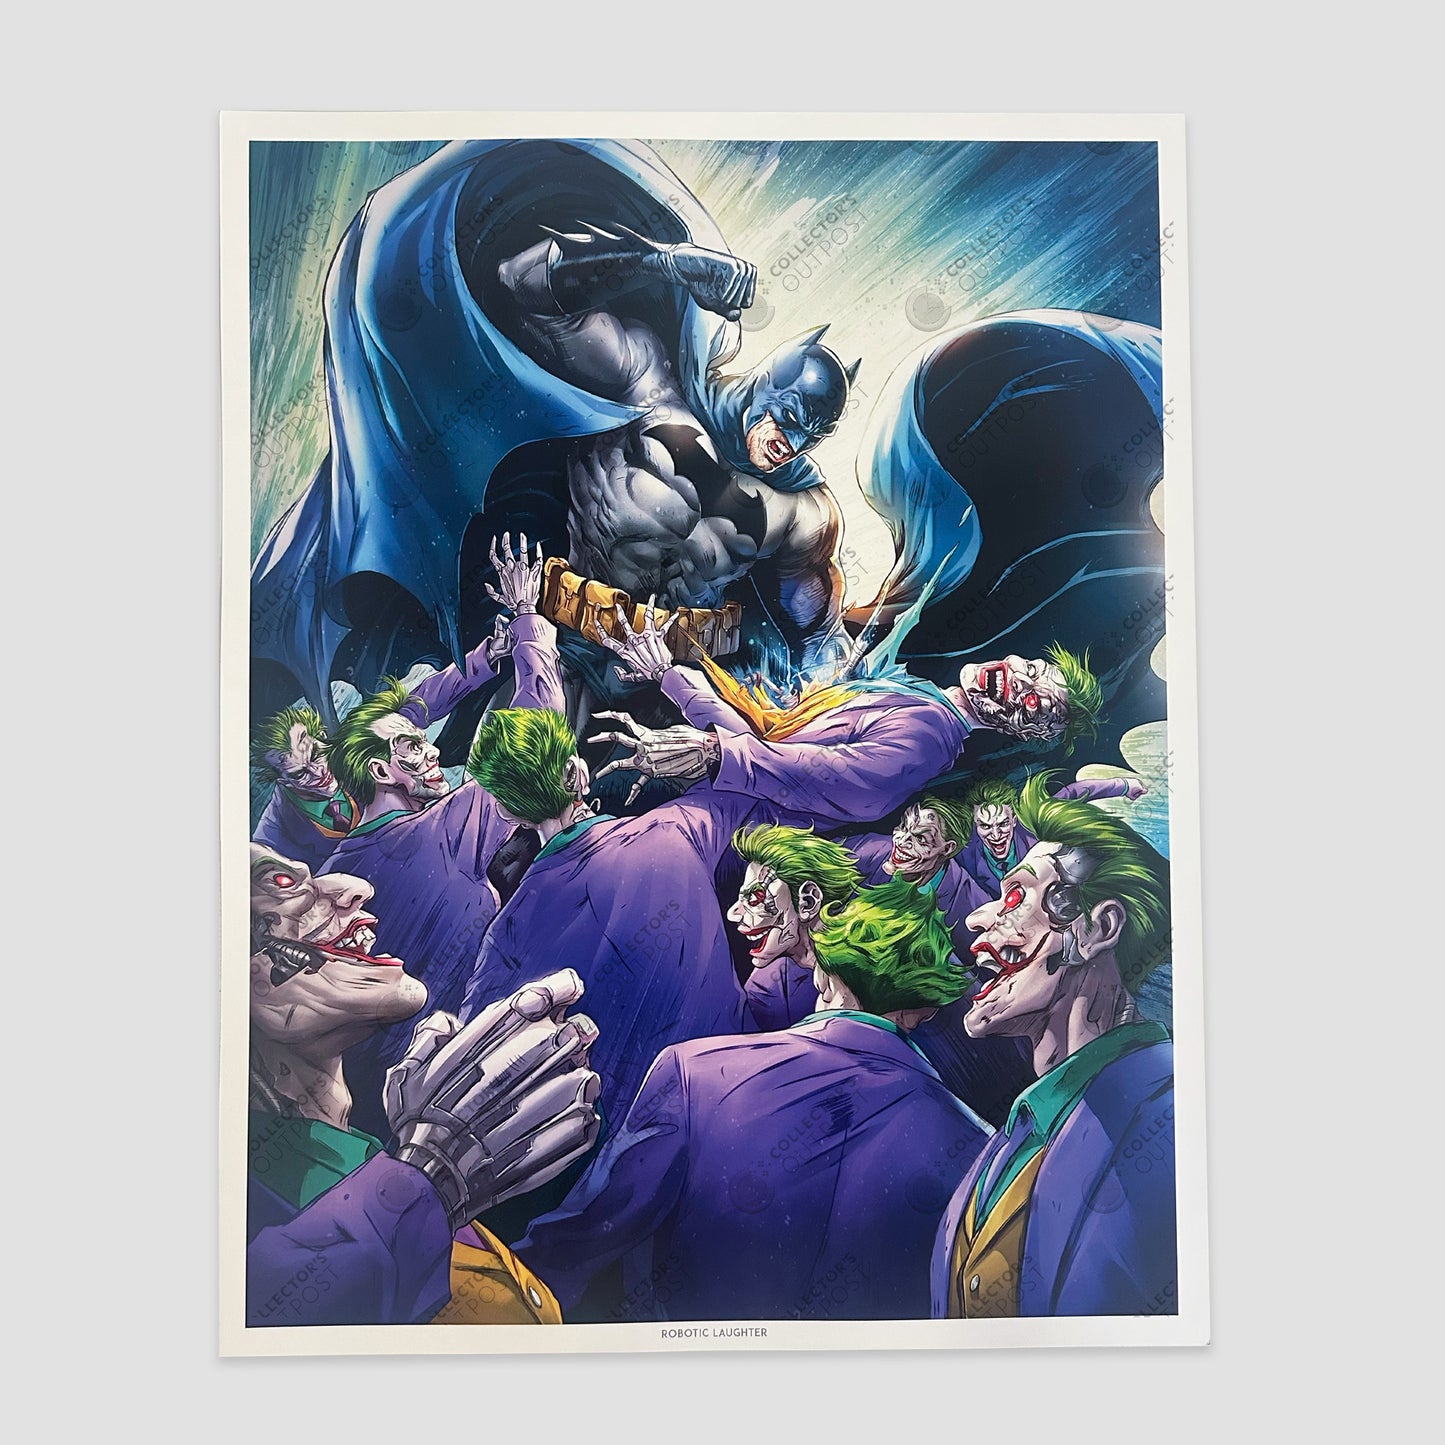 Batman Vs. Joker "Robotic Laughter" (DC Comics) Premium Art Print